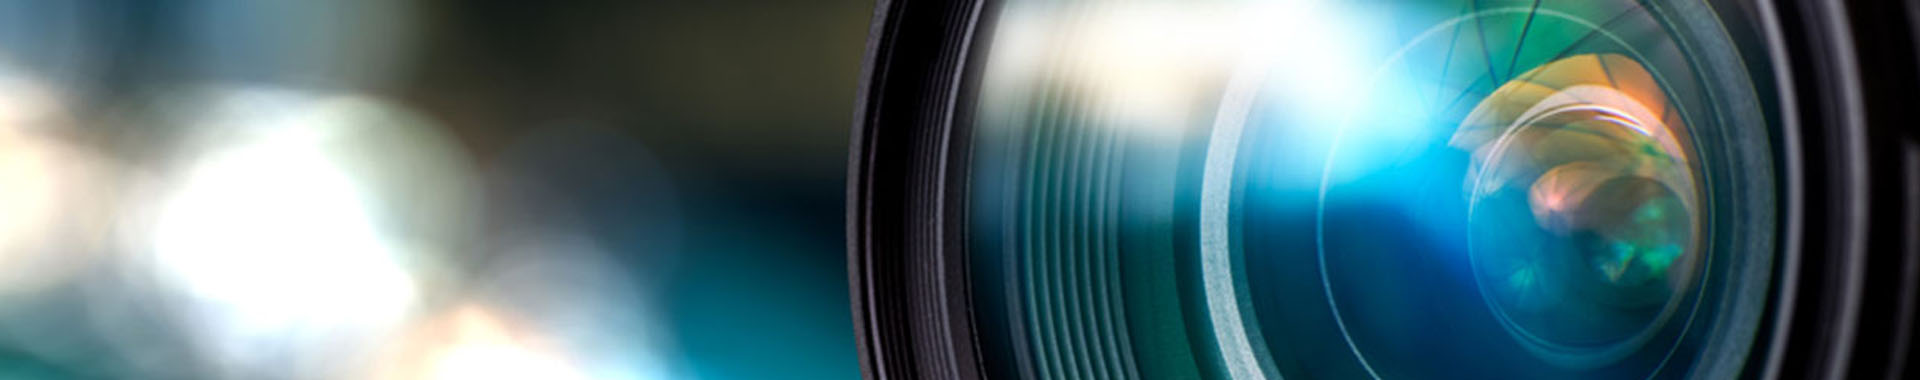 Image of a camera lens